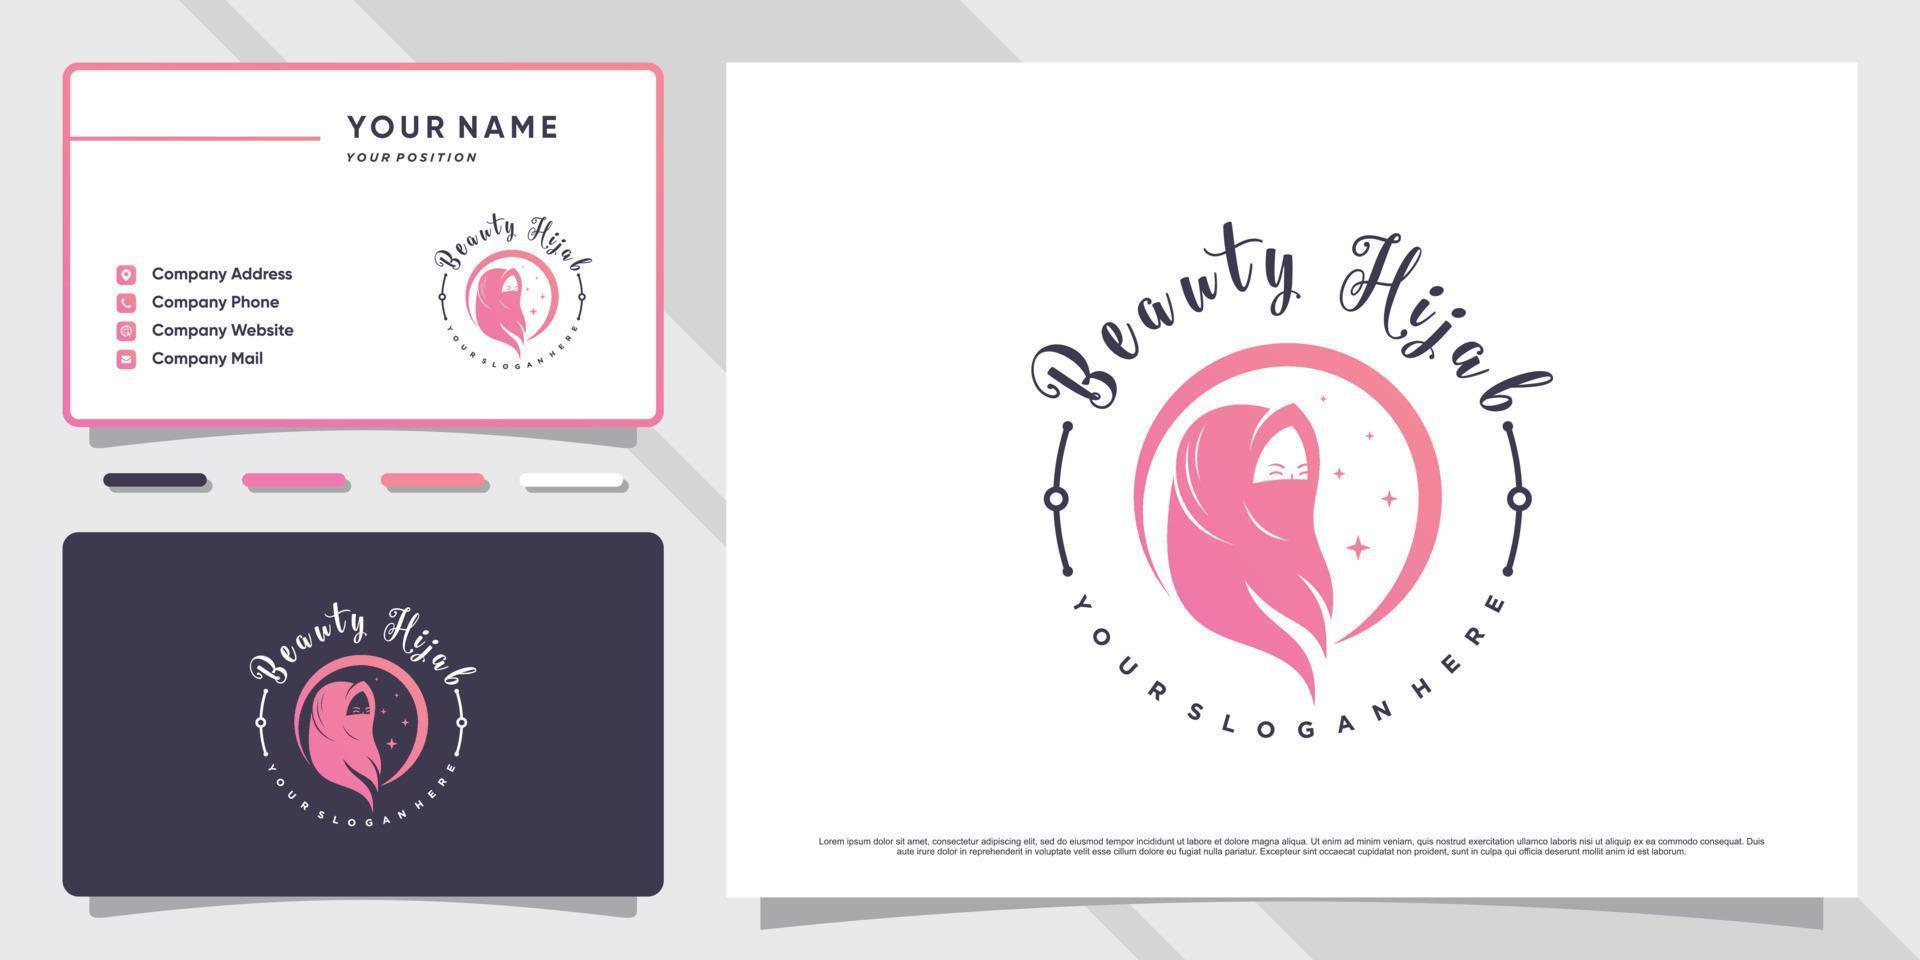 Beauty-Hijab-Frauen-Logo-Design mit einzigartigem Konzept und Visitenkarten-Design Premium-Vektor vektor